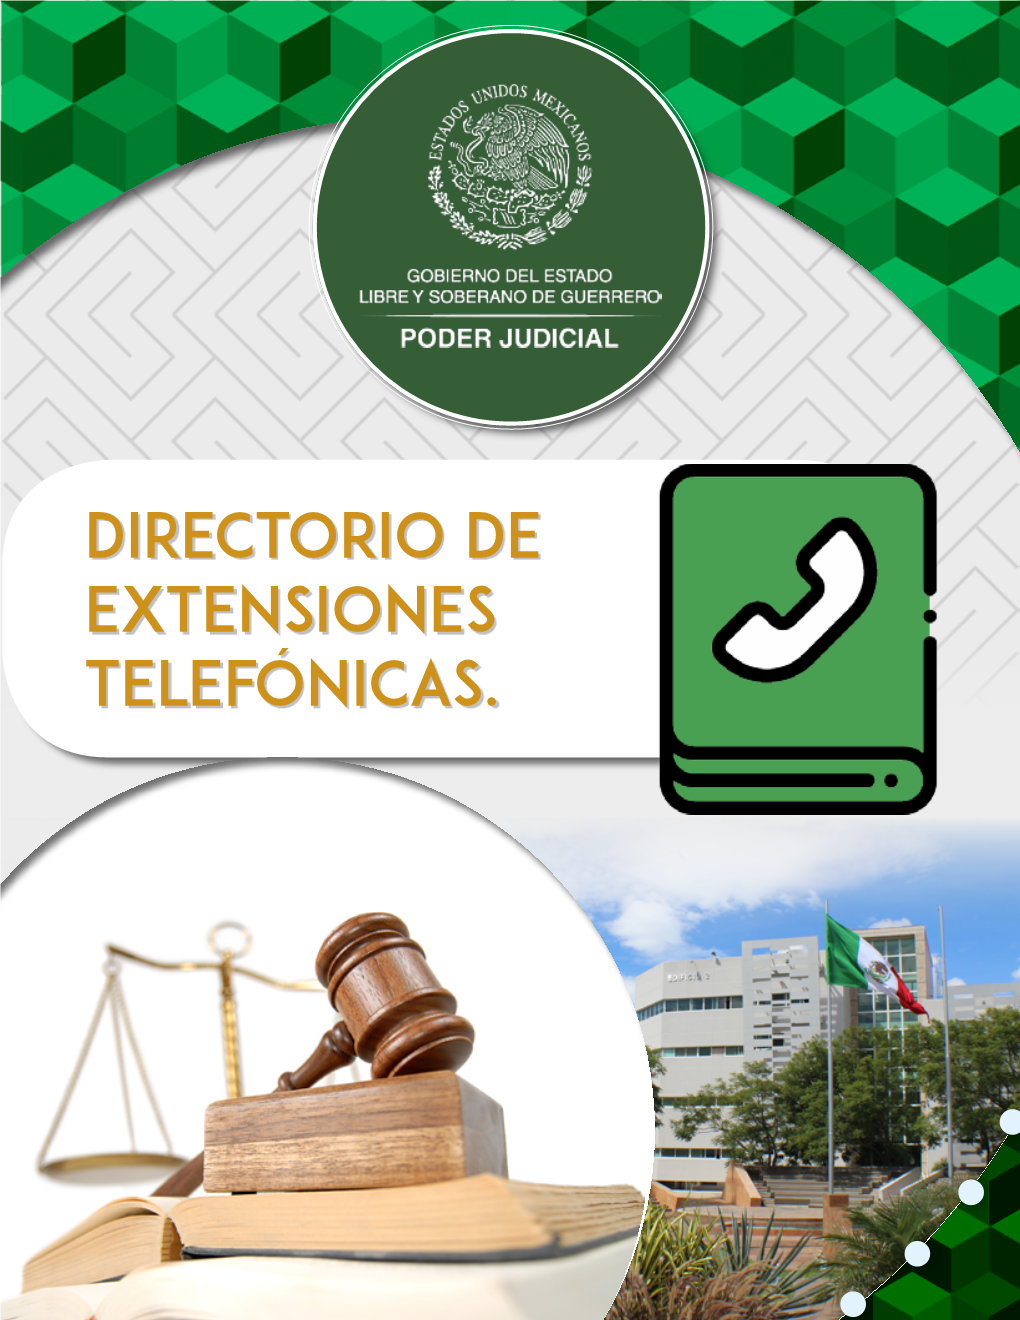 Directorio De Extensiones Telefónicas. Poder Judicial Del Estado De Guerrero